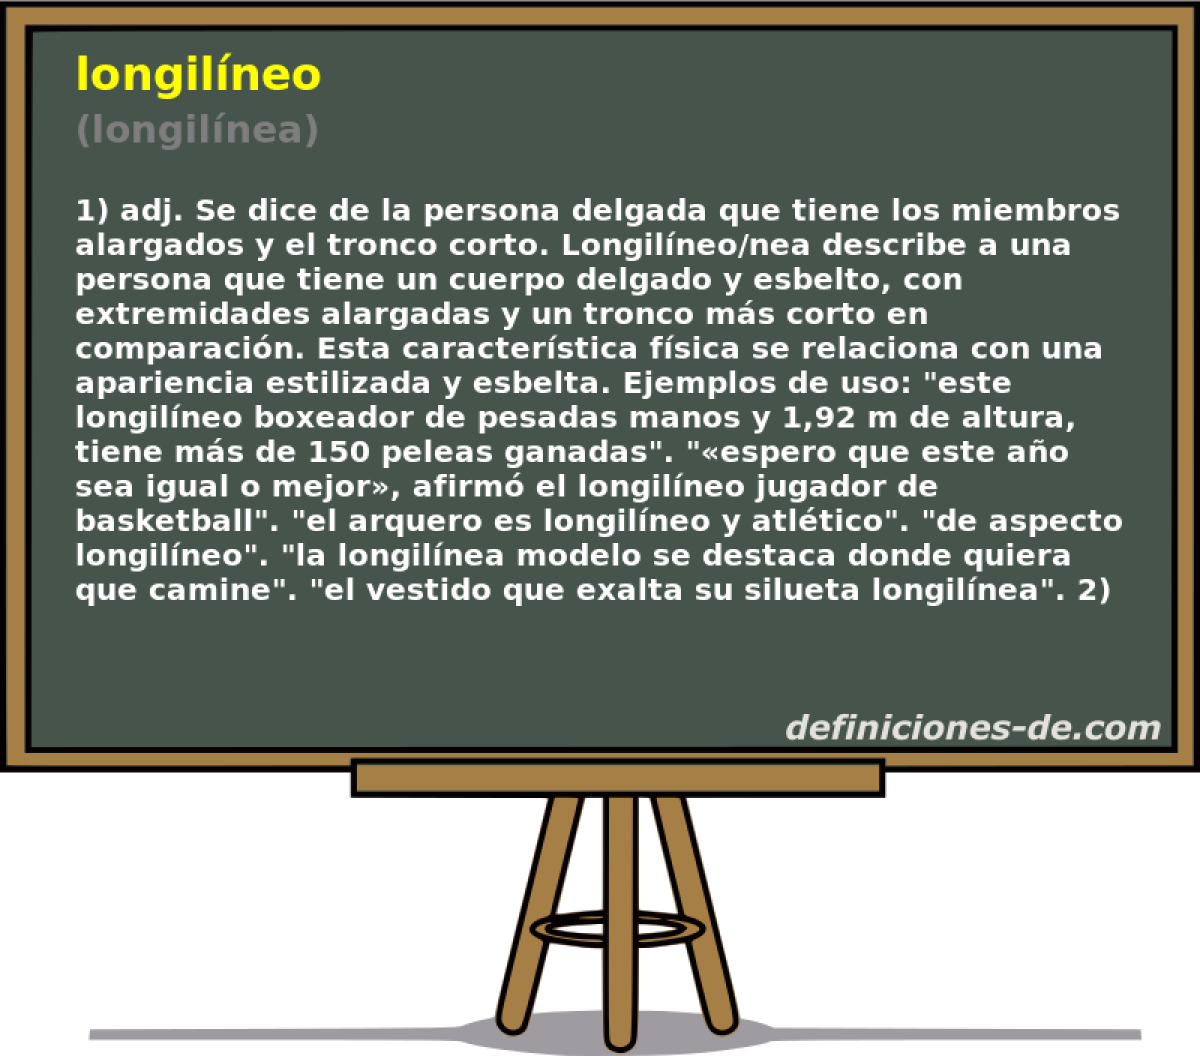 longilneo (longilnea)